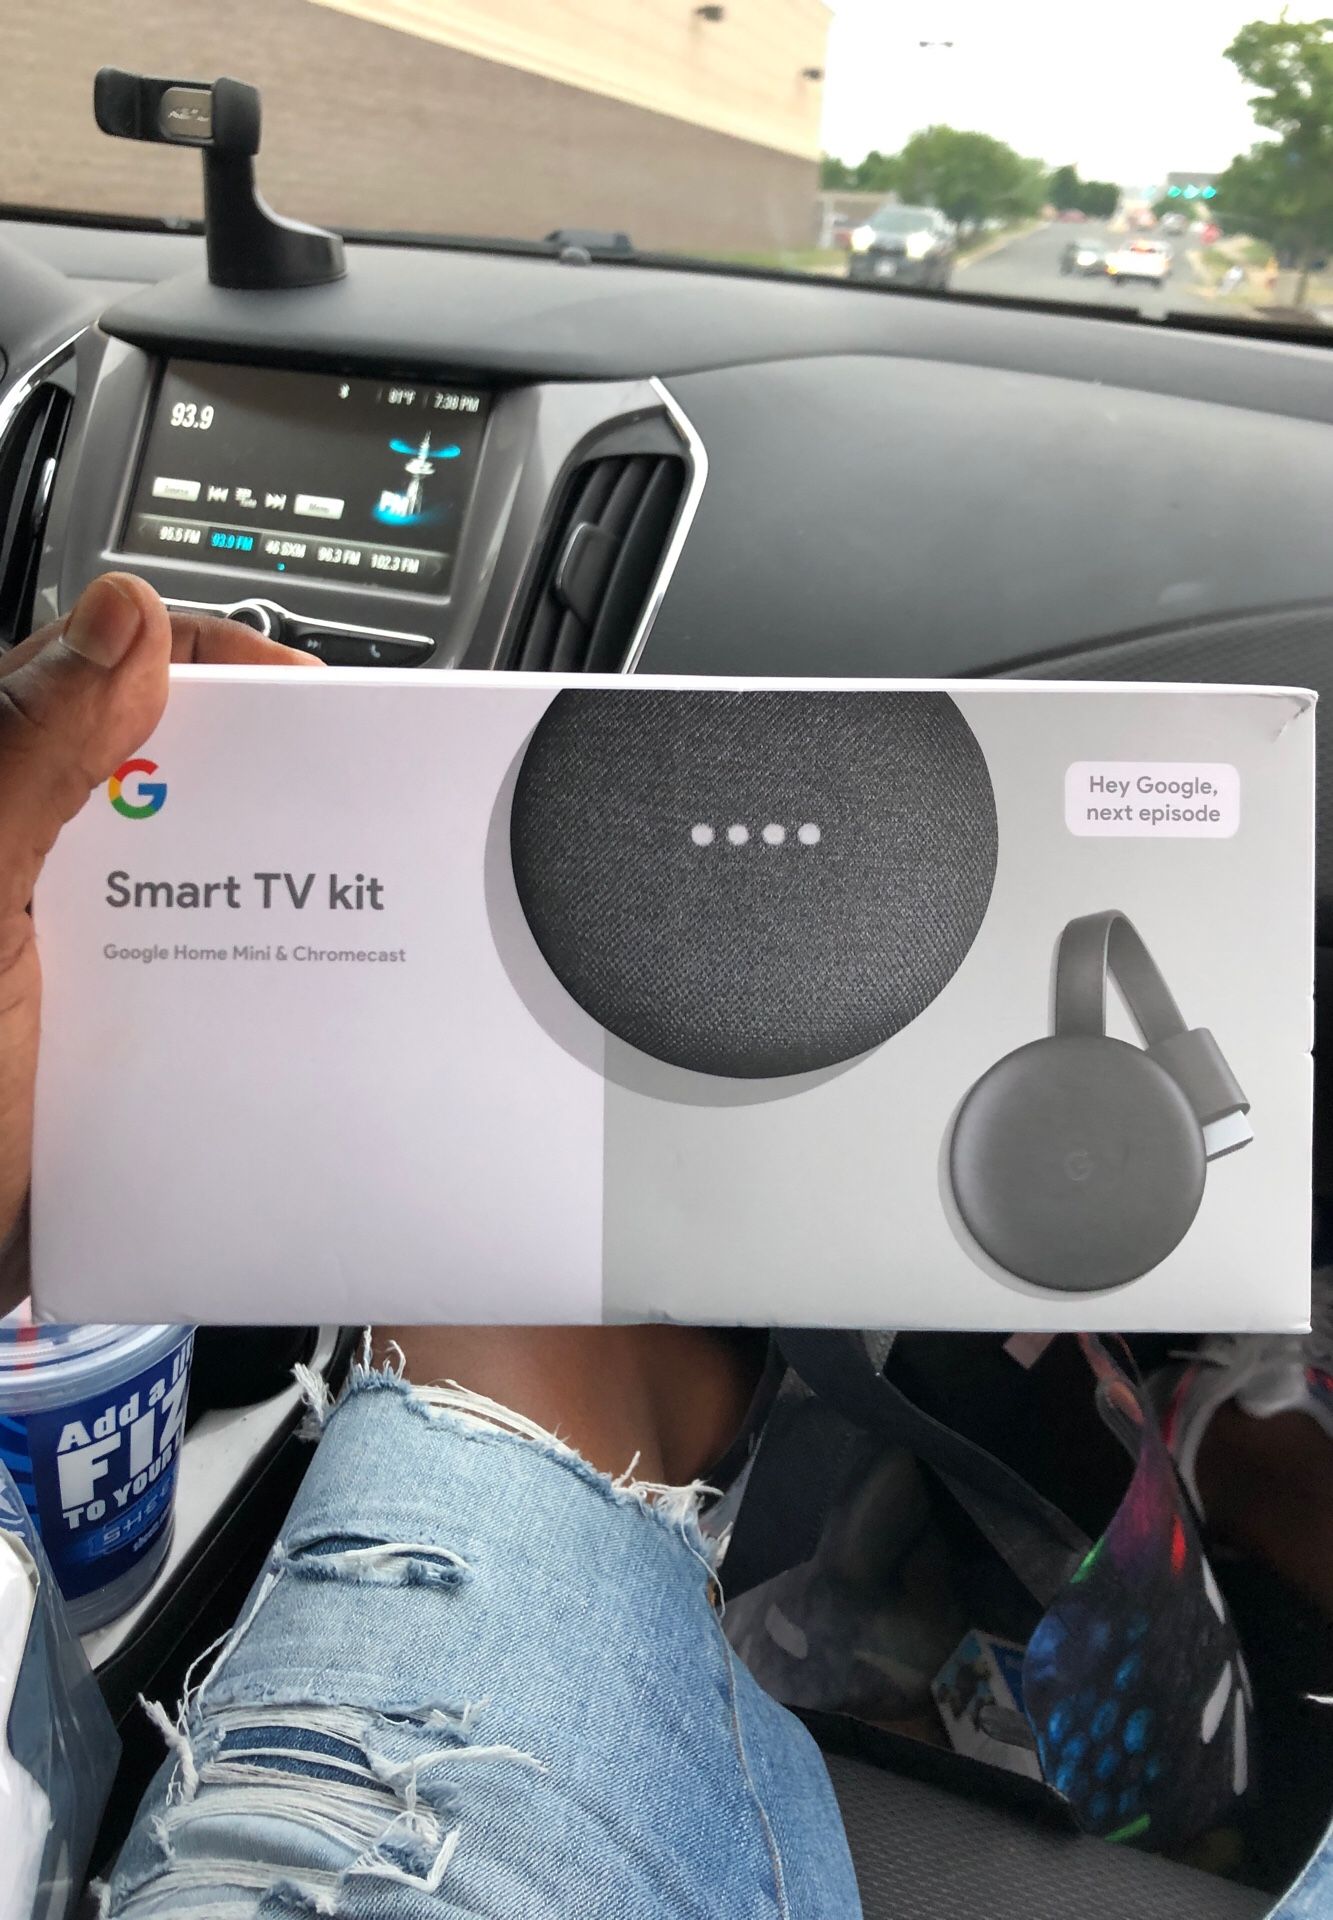 Google Home Smart TV Kit (Google Hone Mini + Chromecast)